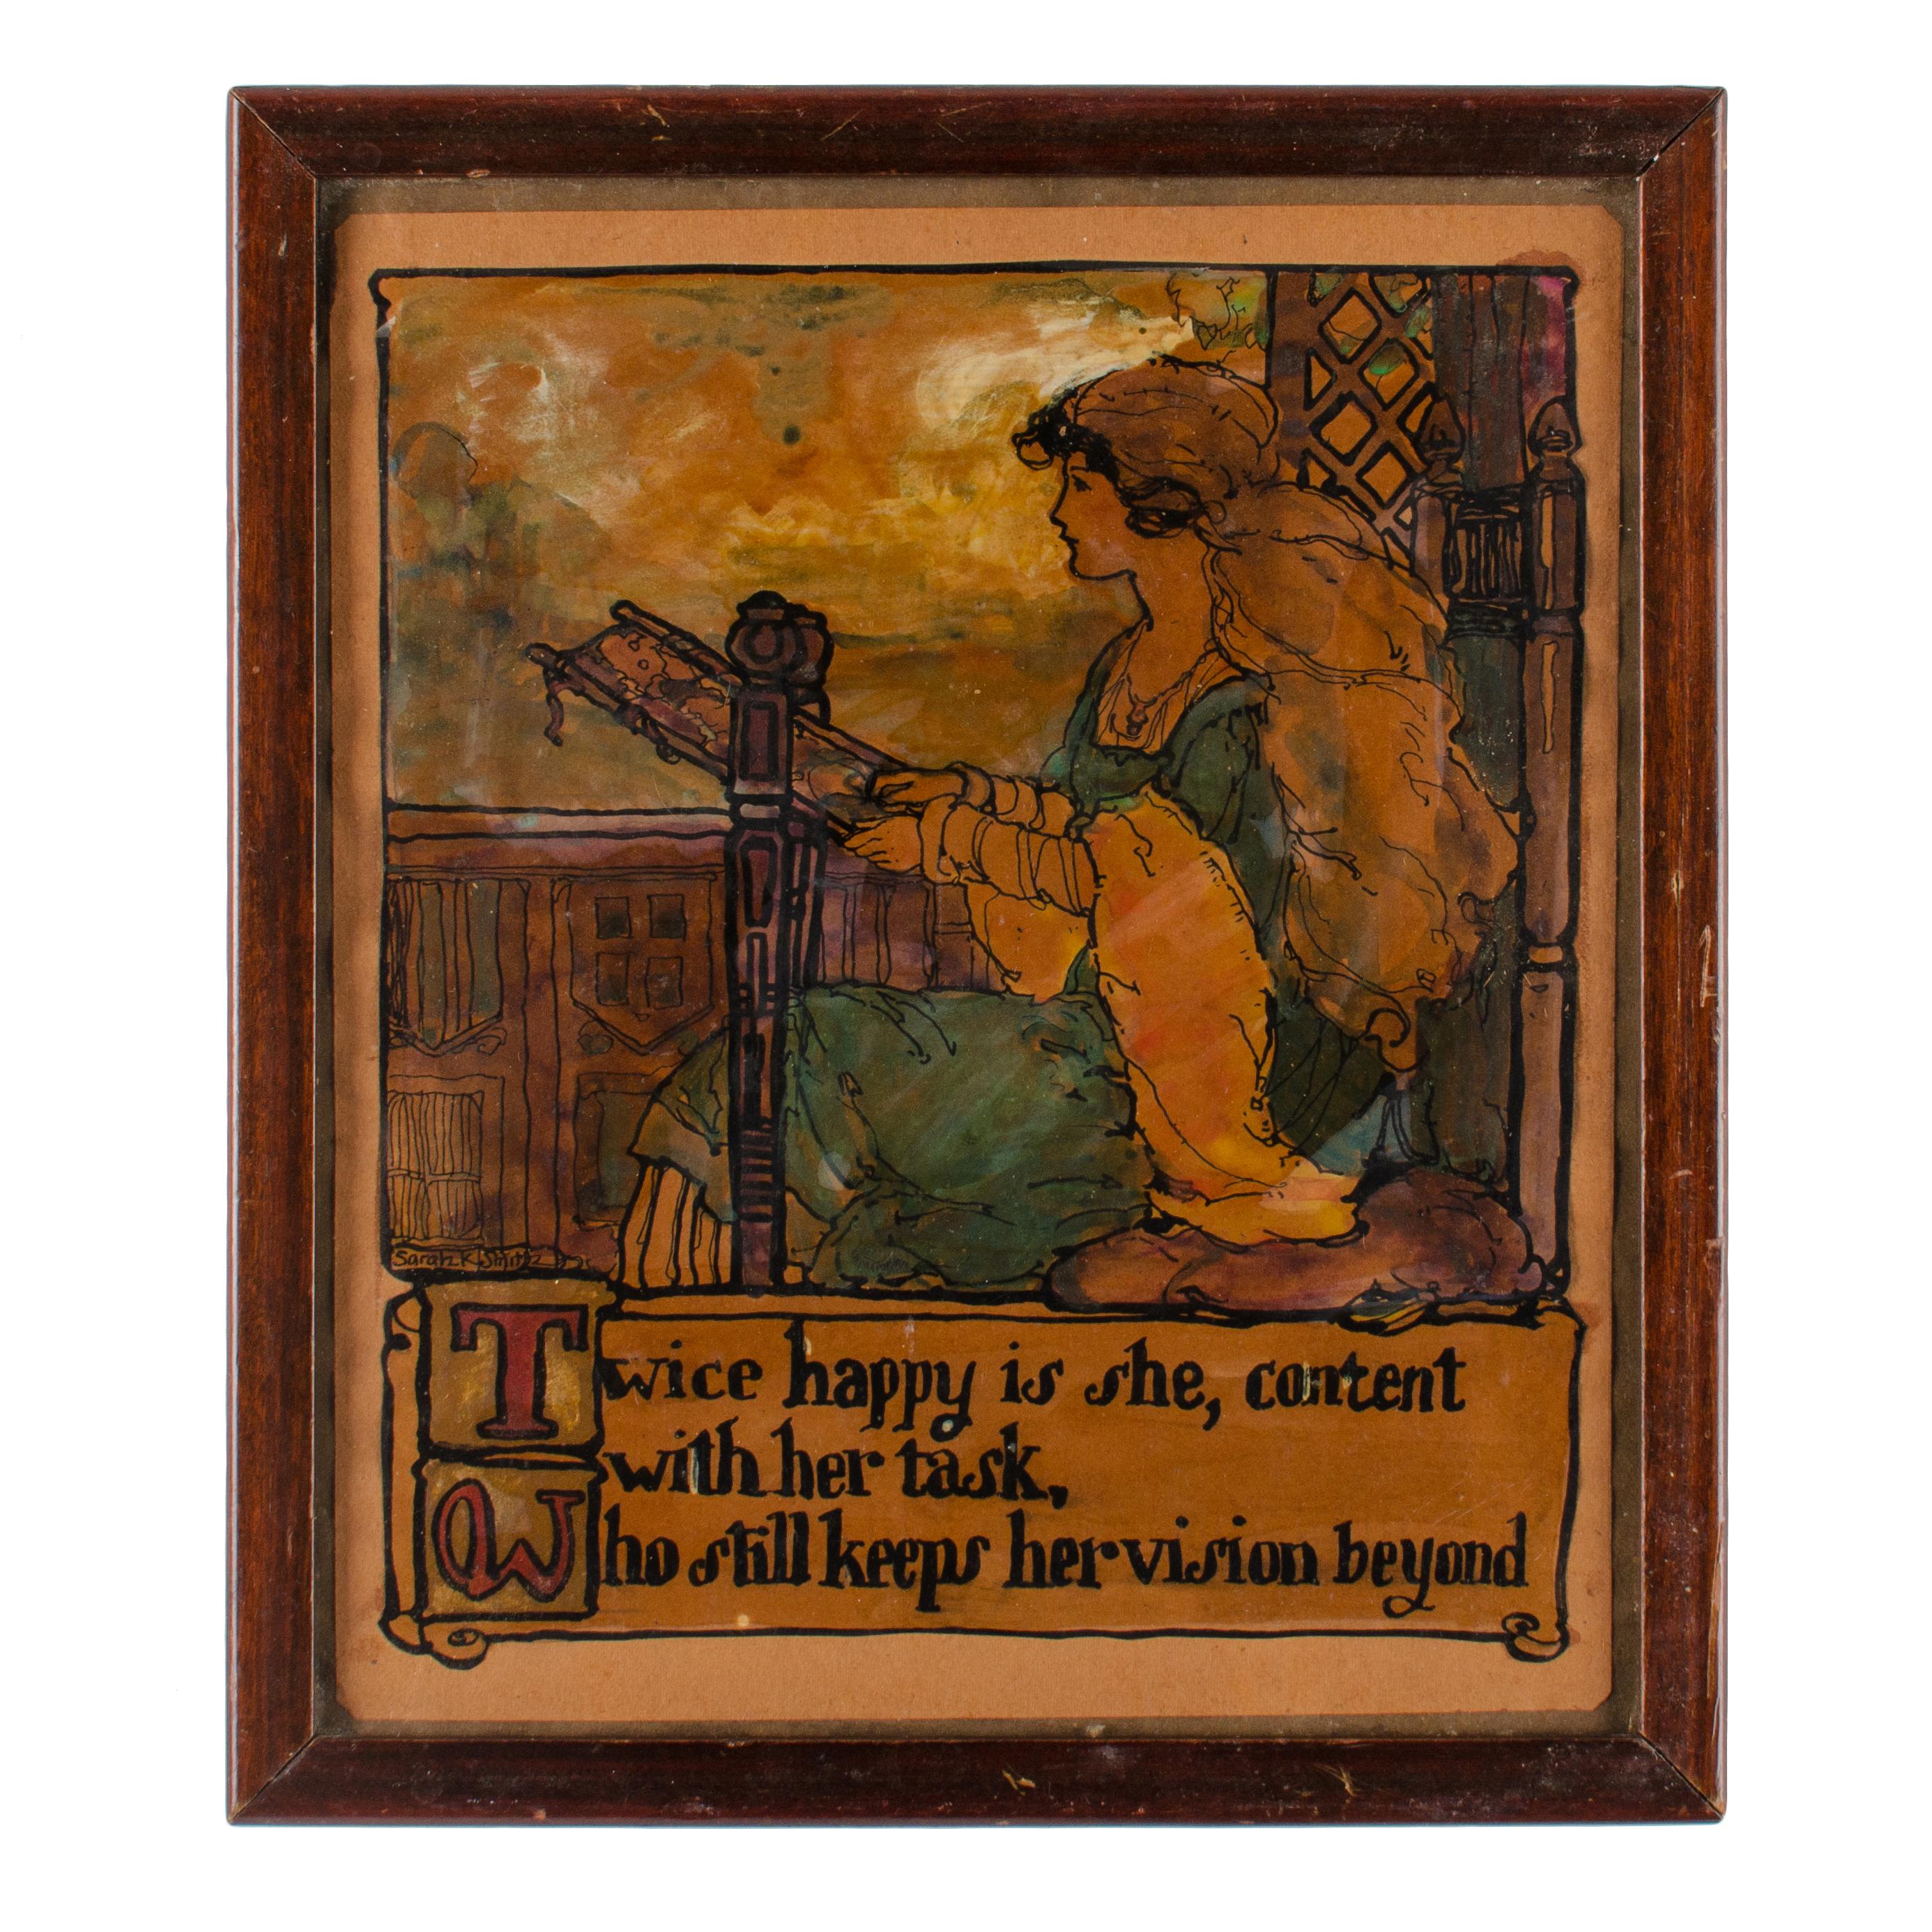 Sarah Katherine Smith
(Américain, né en 1877)

Née à Rio Vista, en Californie, elle a fréquenté l'Art Institute of Chicago, puis la Boston Museum School. Elle a passé la majeure partie de sa vie à Wheaton, dans l'Illinois, où elle a enseigné au